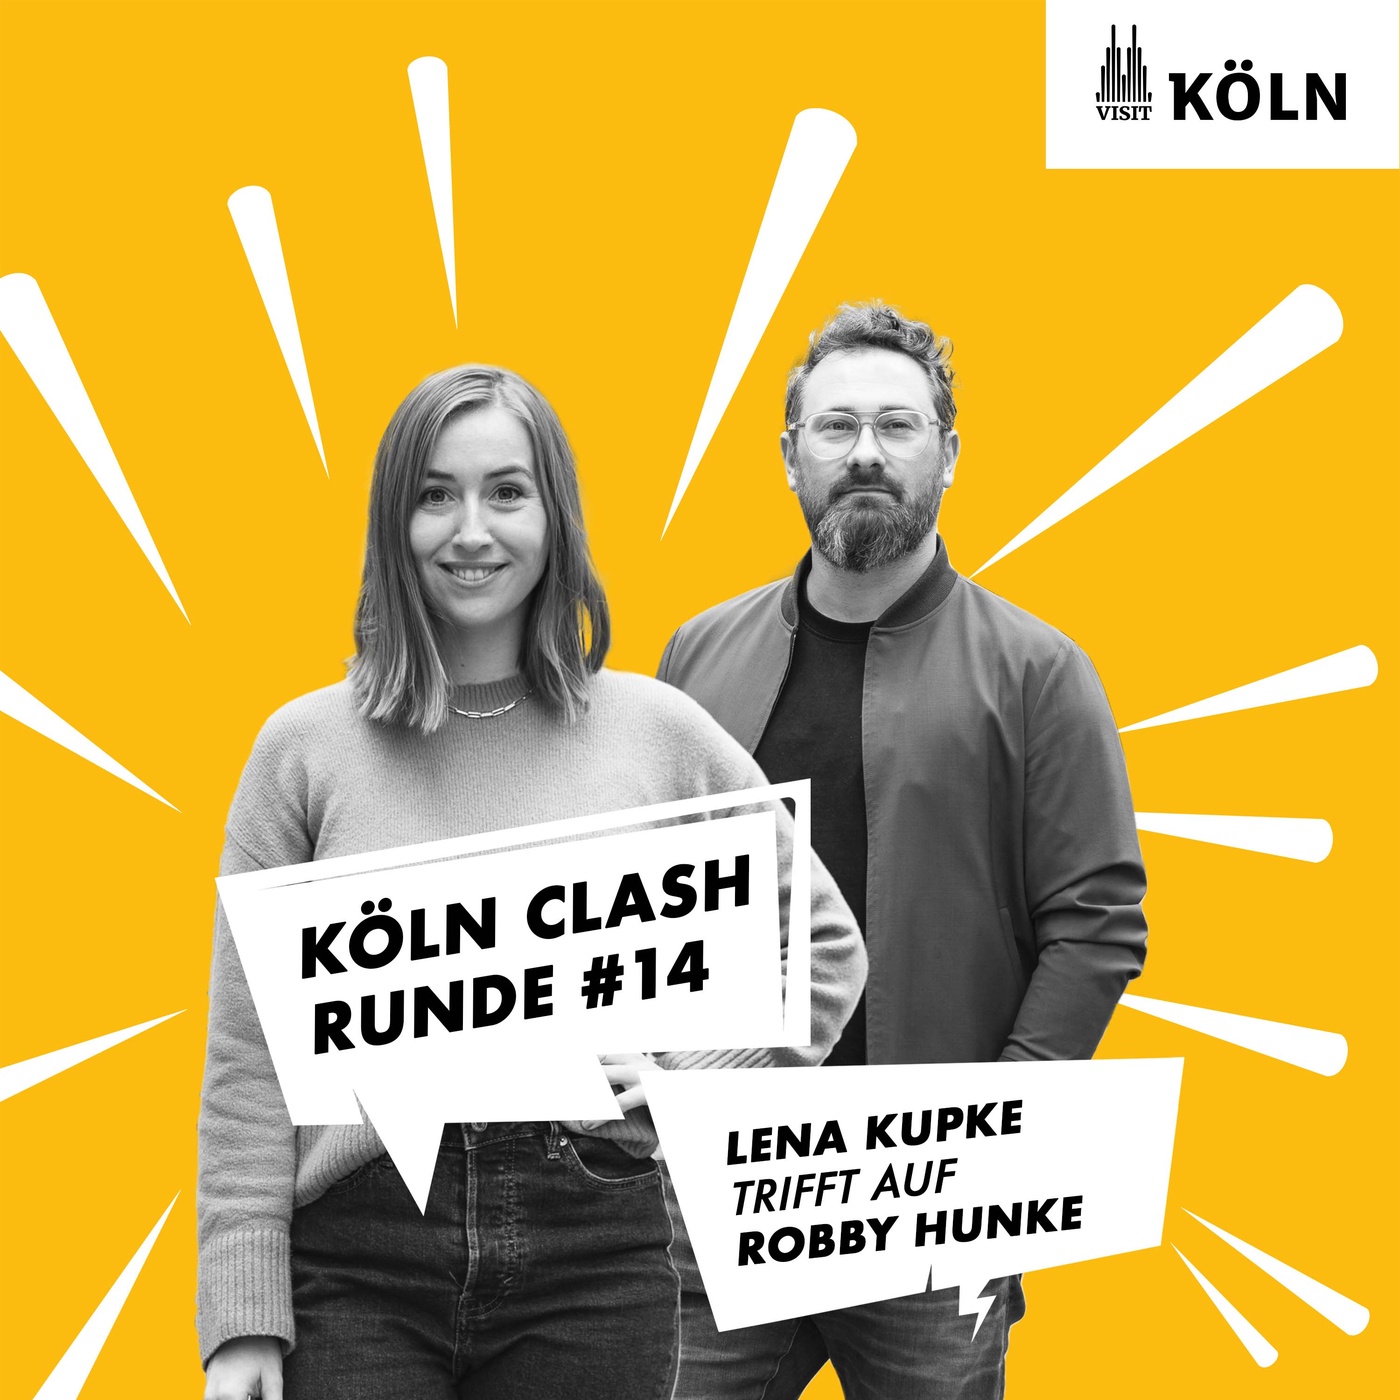 Köln Clash, Runde #14 - Lena Kupke trifft auf Robby Hunke